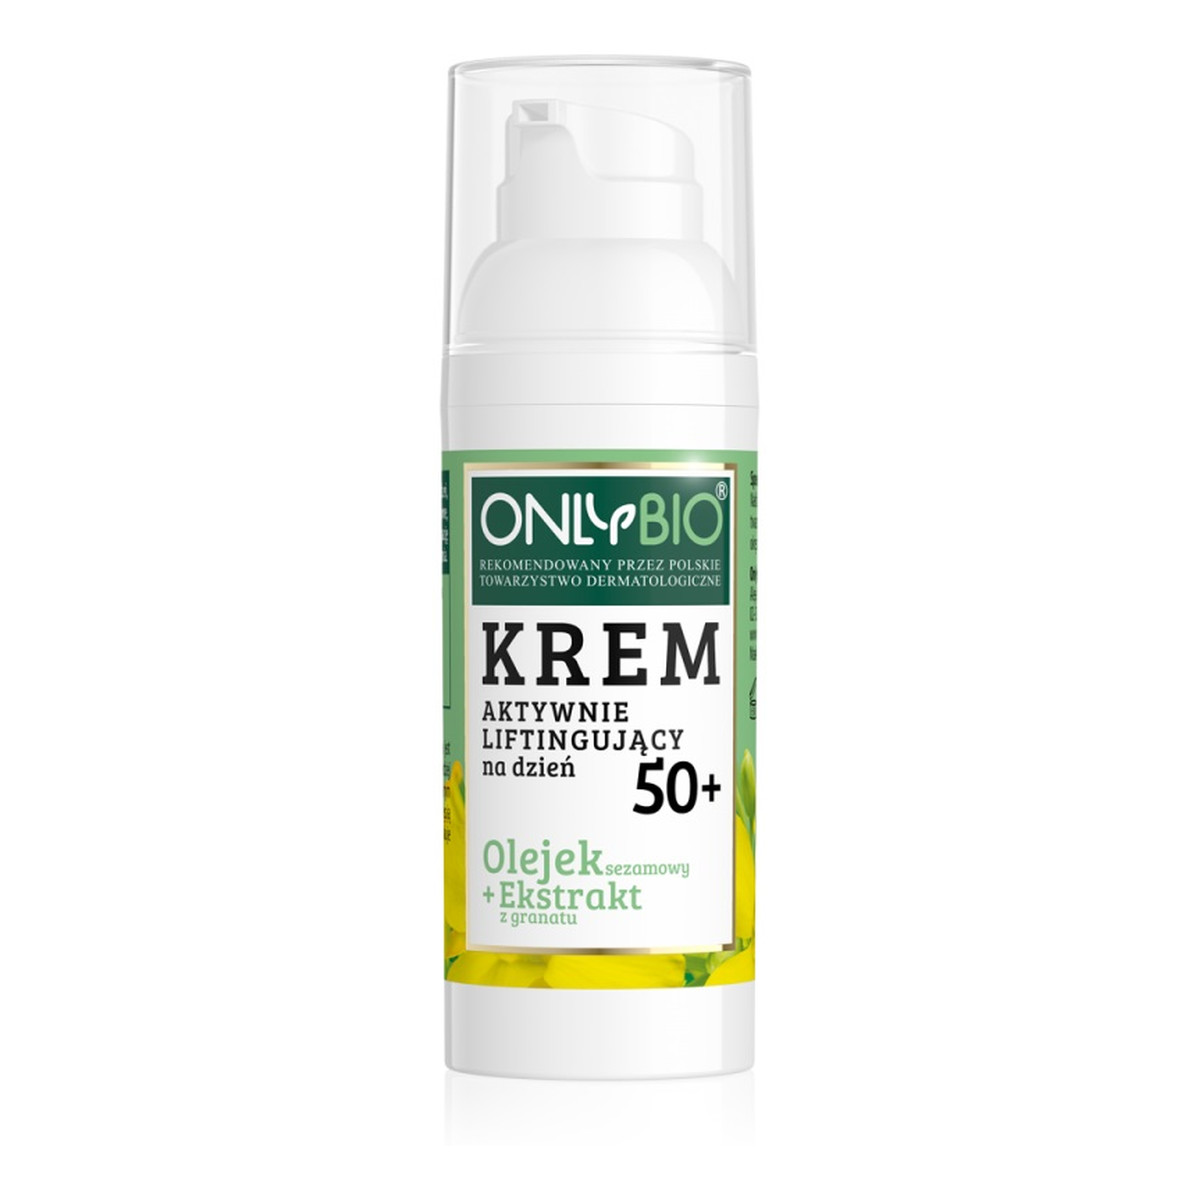 OnlyBio Krem aktywnie liftingujący na dzień 50+ olejek sezamowy i ekstrakt z granatu 50ml